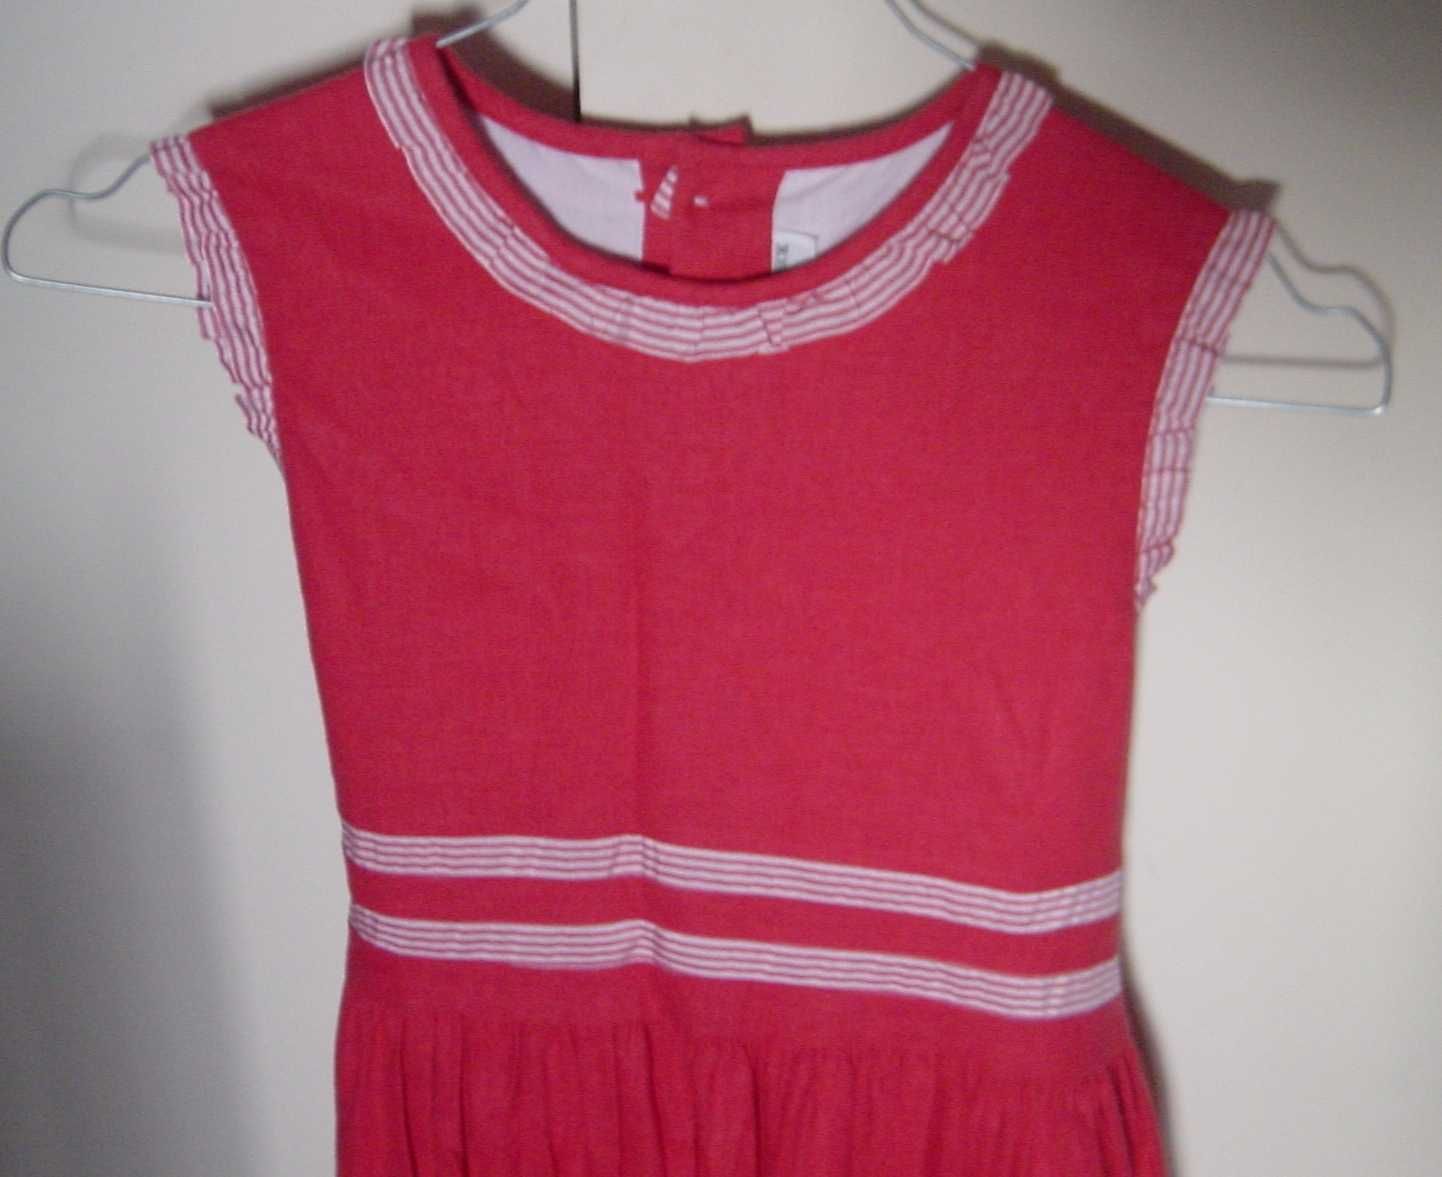 Vestido de Verão T 12A. Tecido alinhado vermelho da Marca NECK & NECK